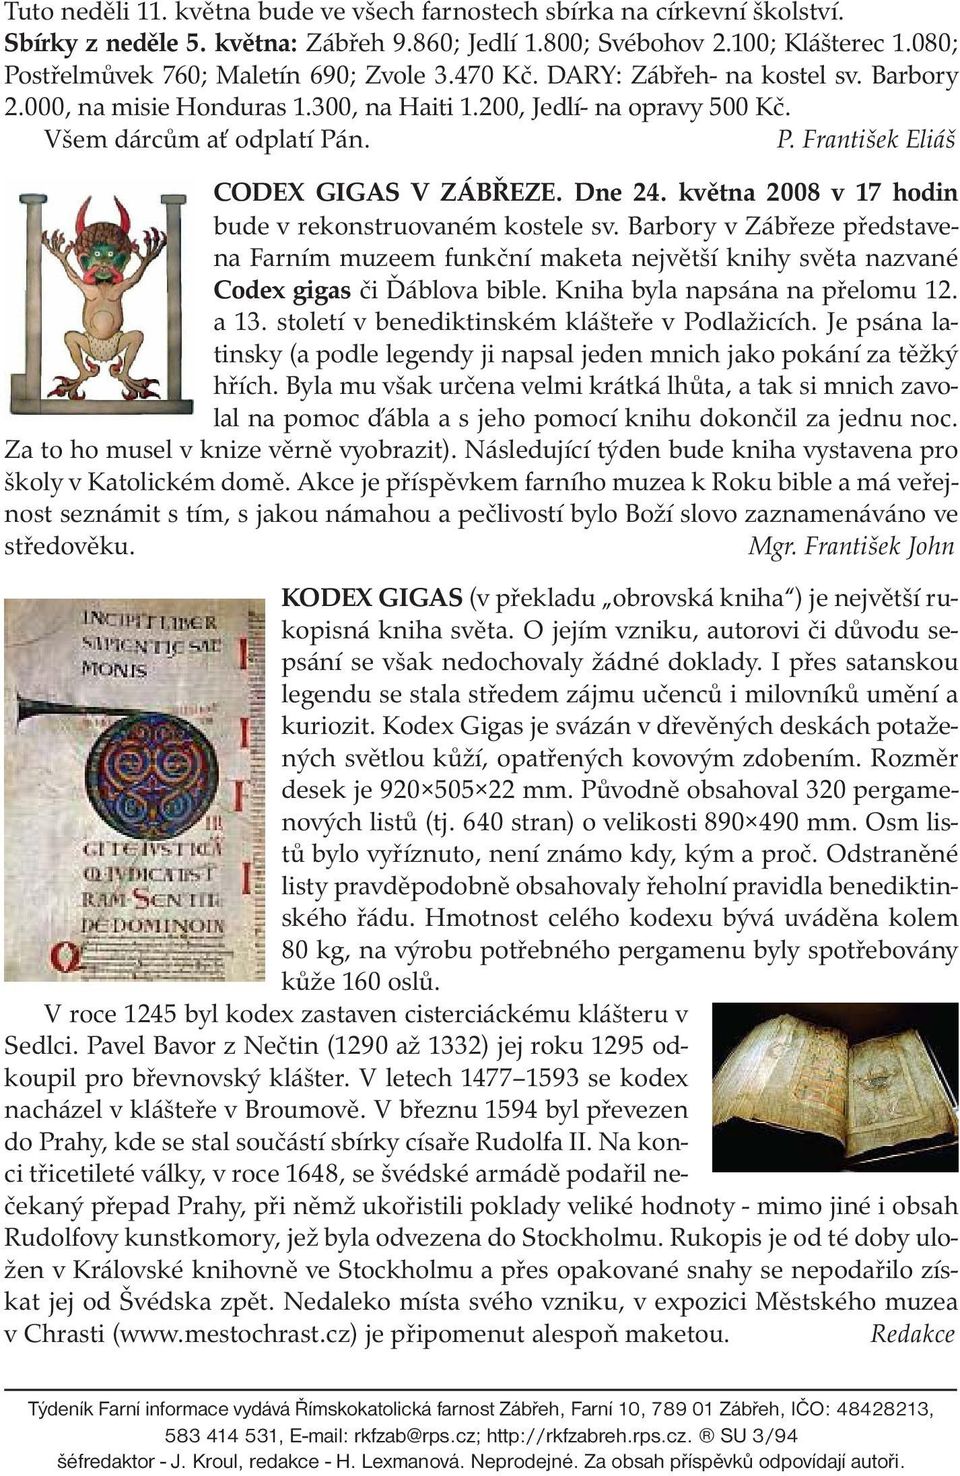 Dne 24. května 2008 v 17 hodin bude v rekonstruovaném kostele sv. Barbory v Zábřeze představena Farním muzeem funkční maketa největší knihy světa nazvané Codex gigas či Ďáblova bible.